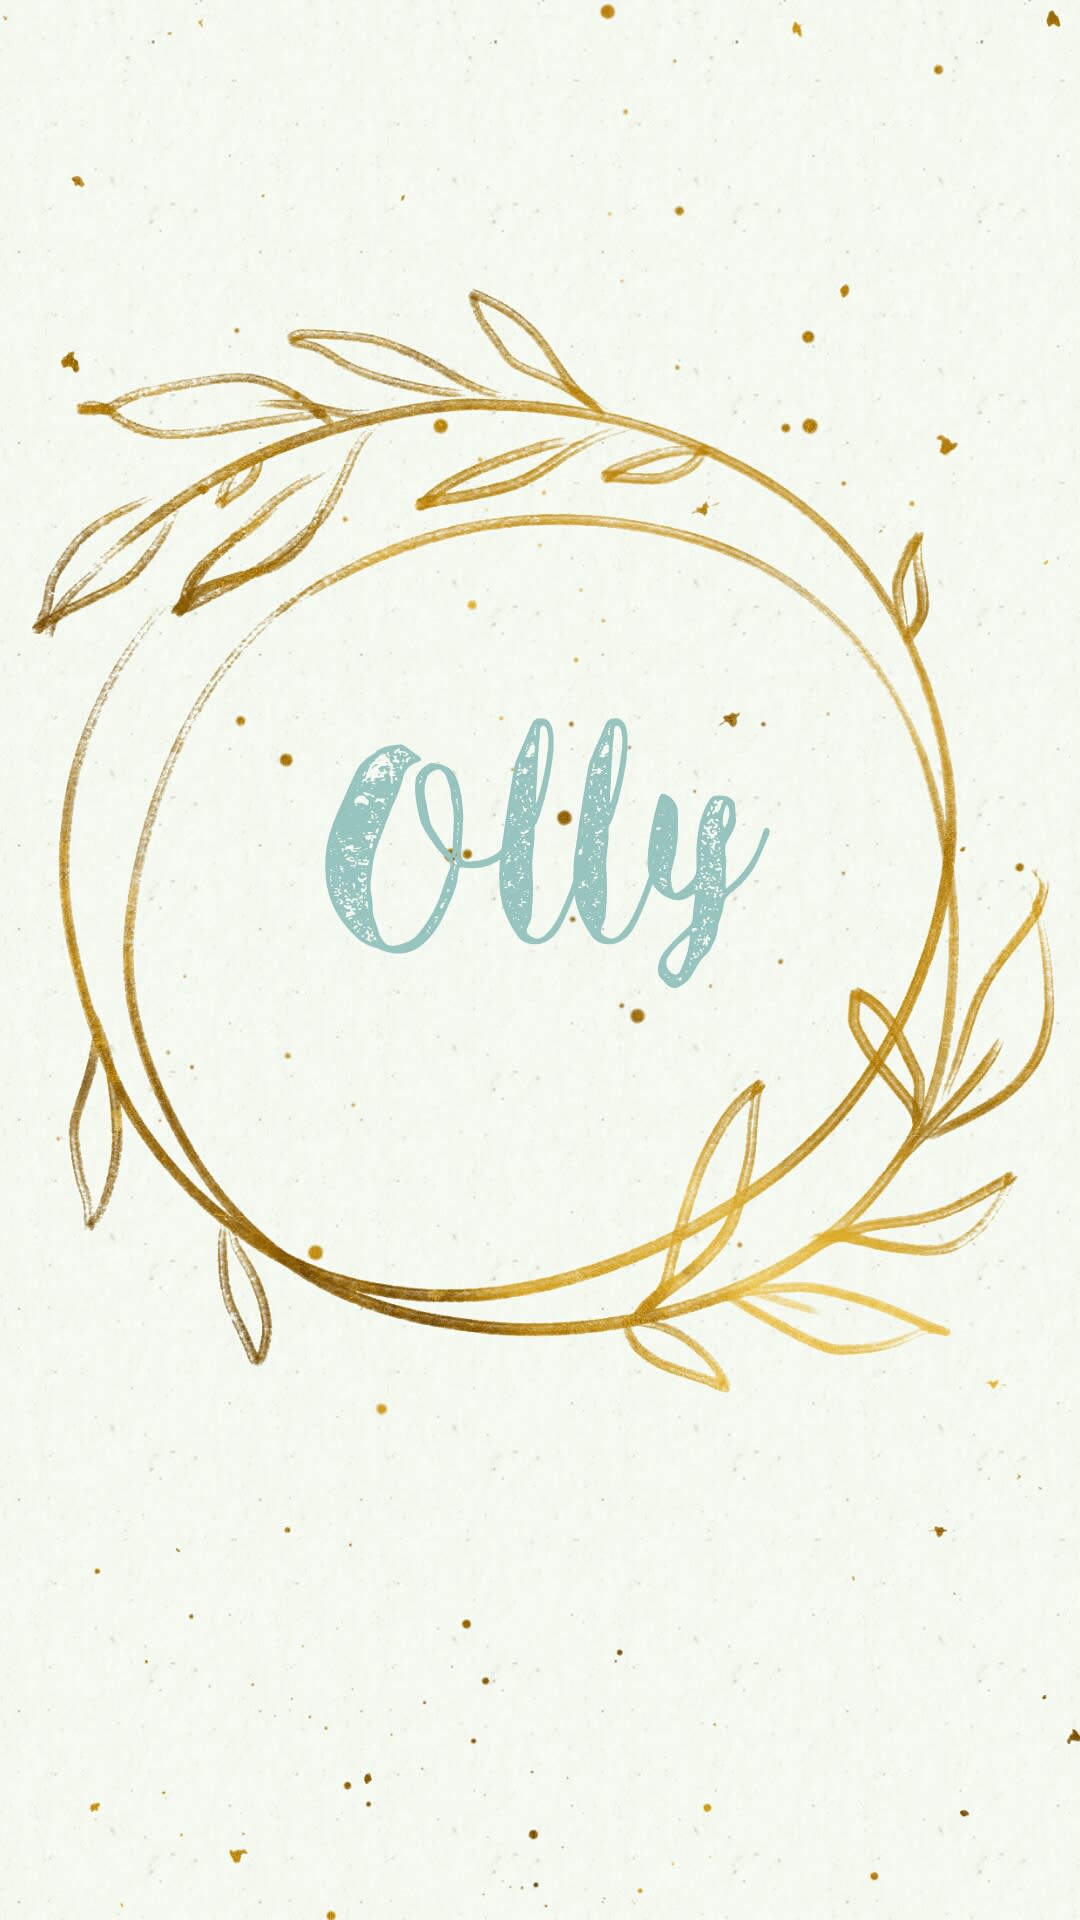 Olly Spoiler